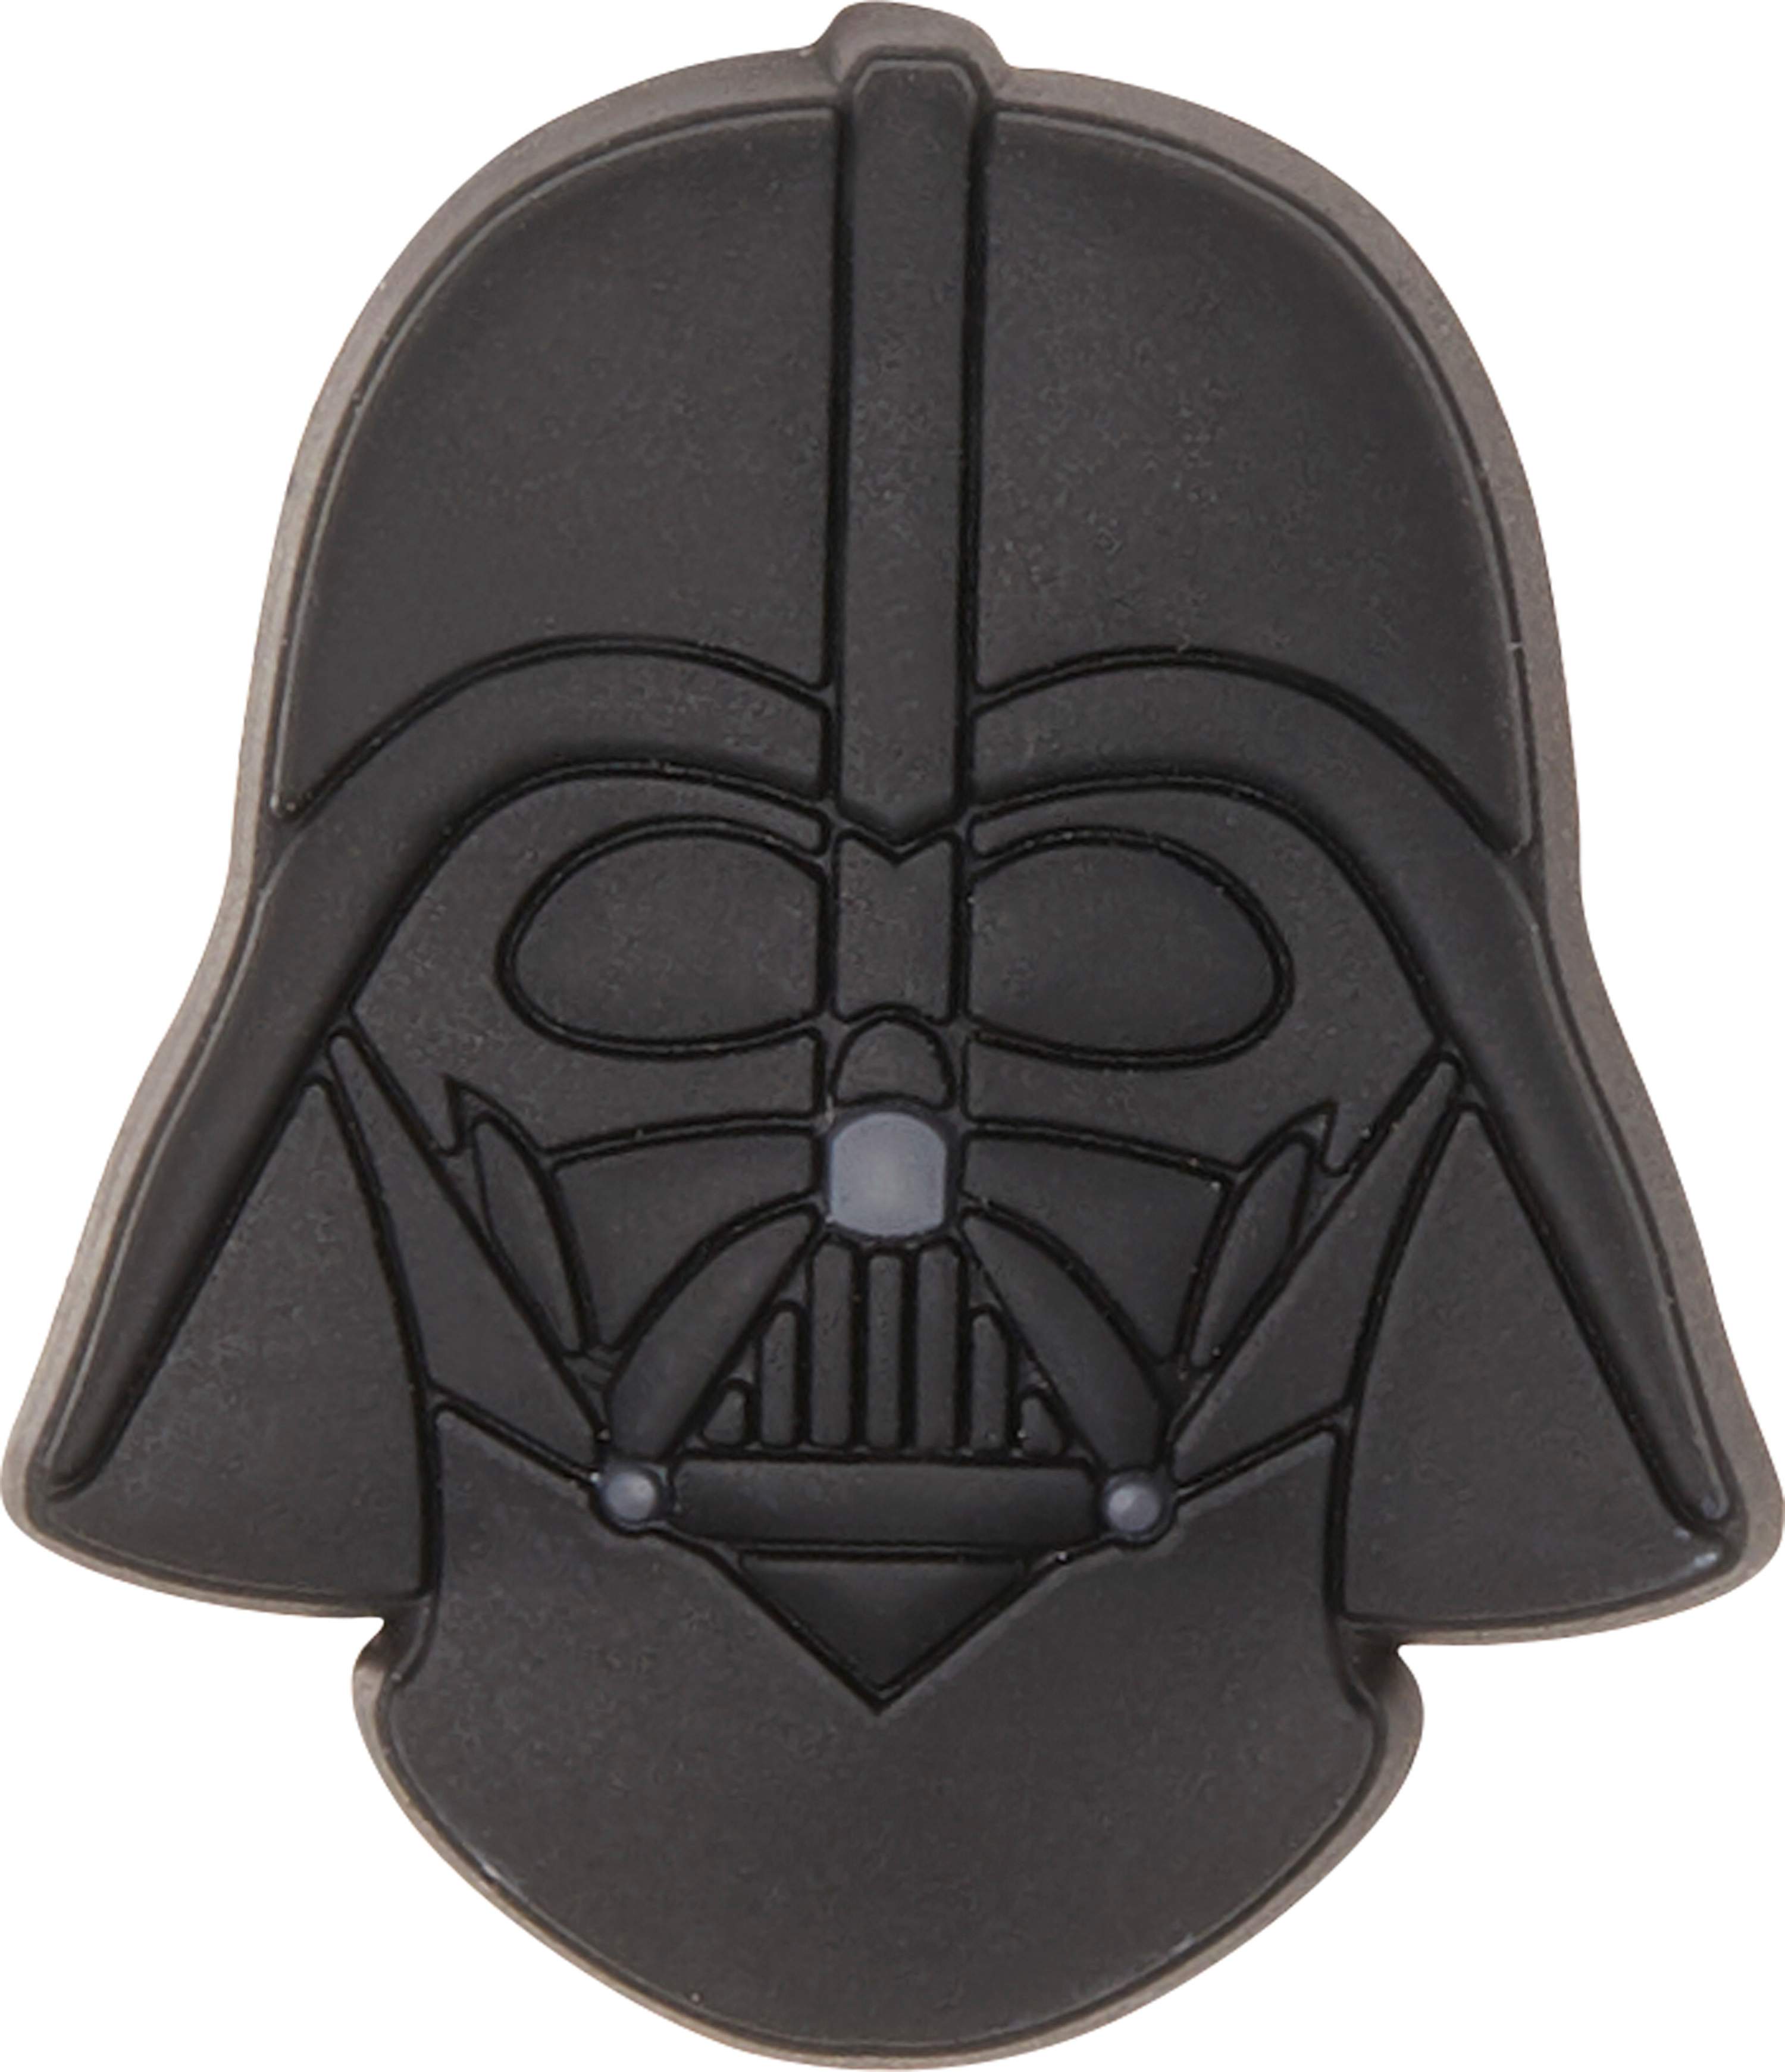 Star Wars Darth Vader Helmet Jibbitz 